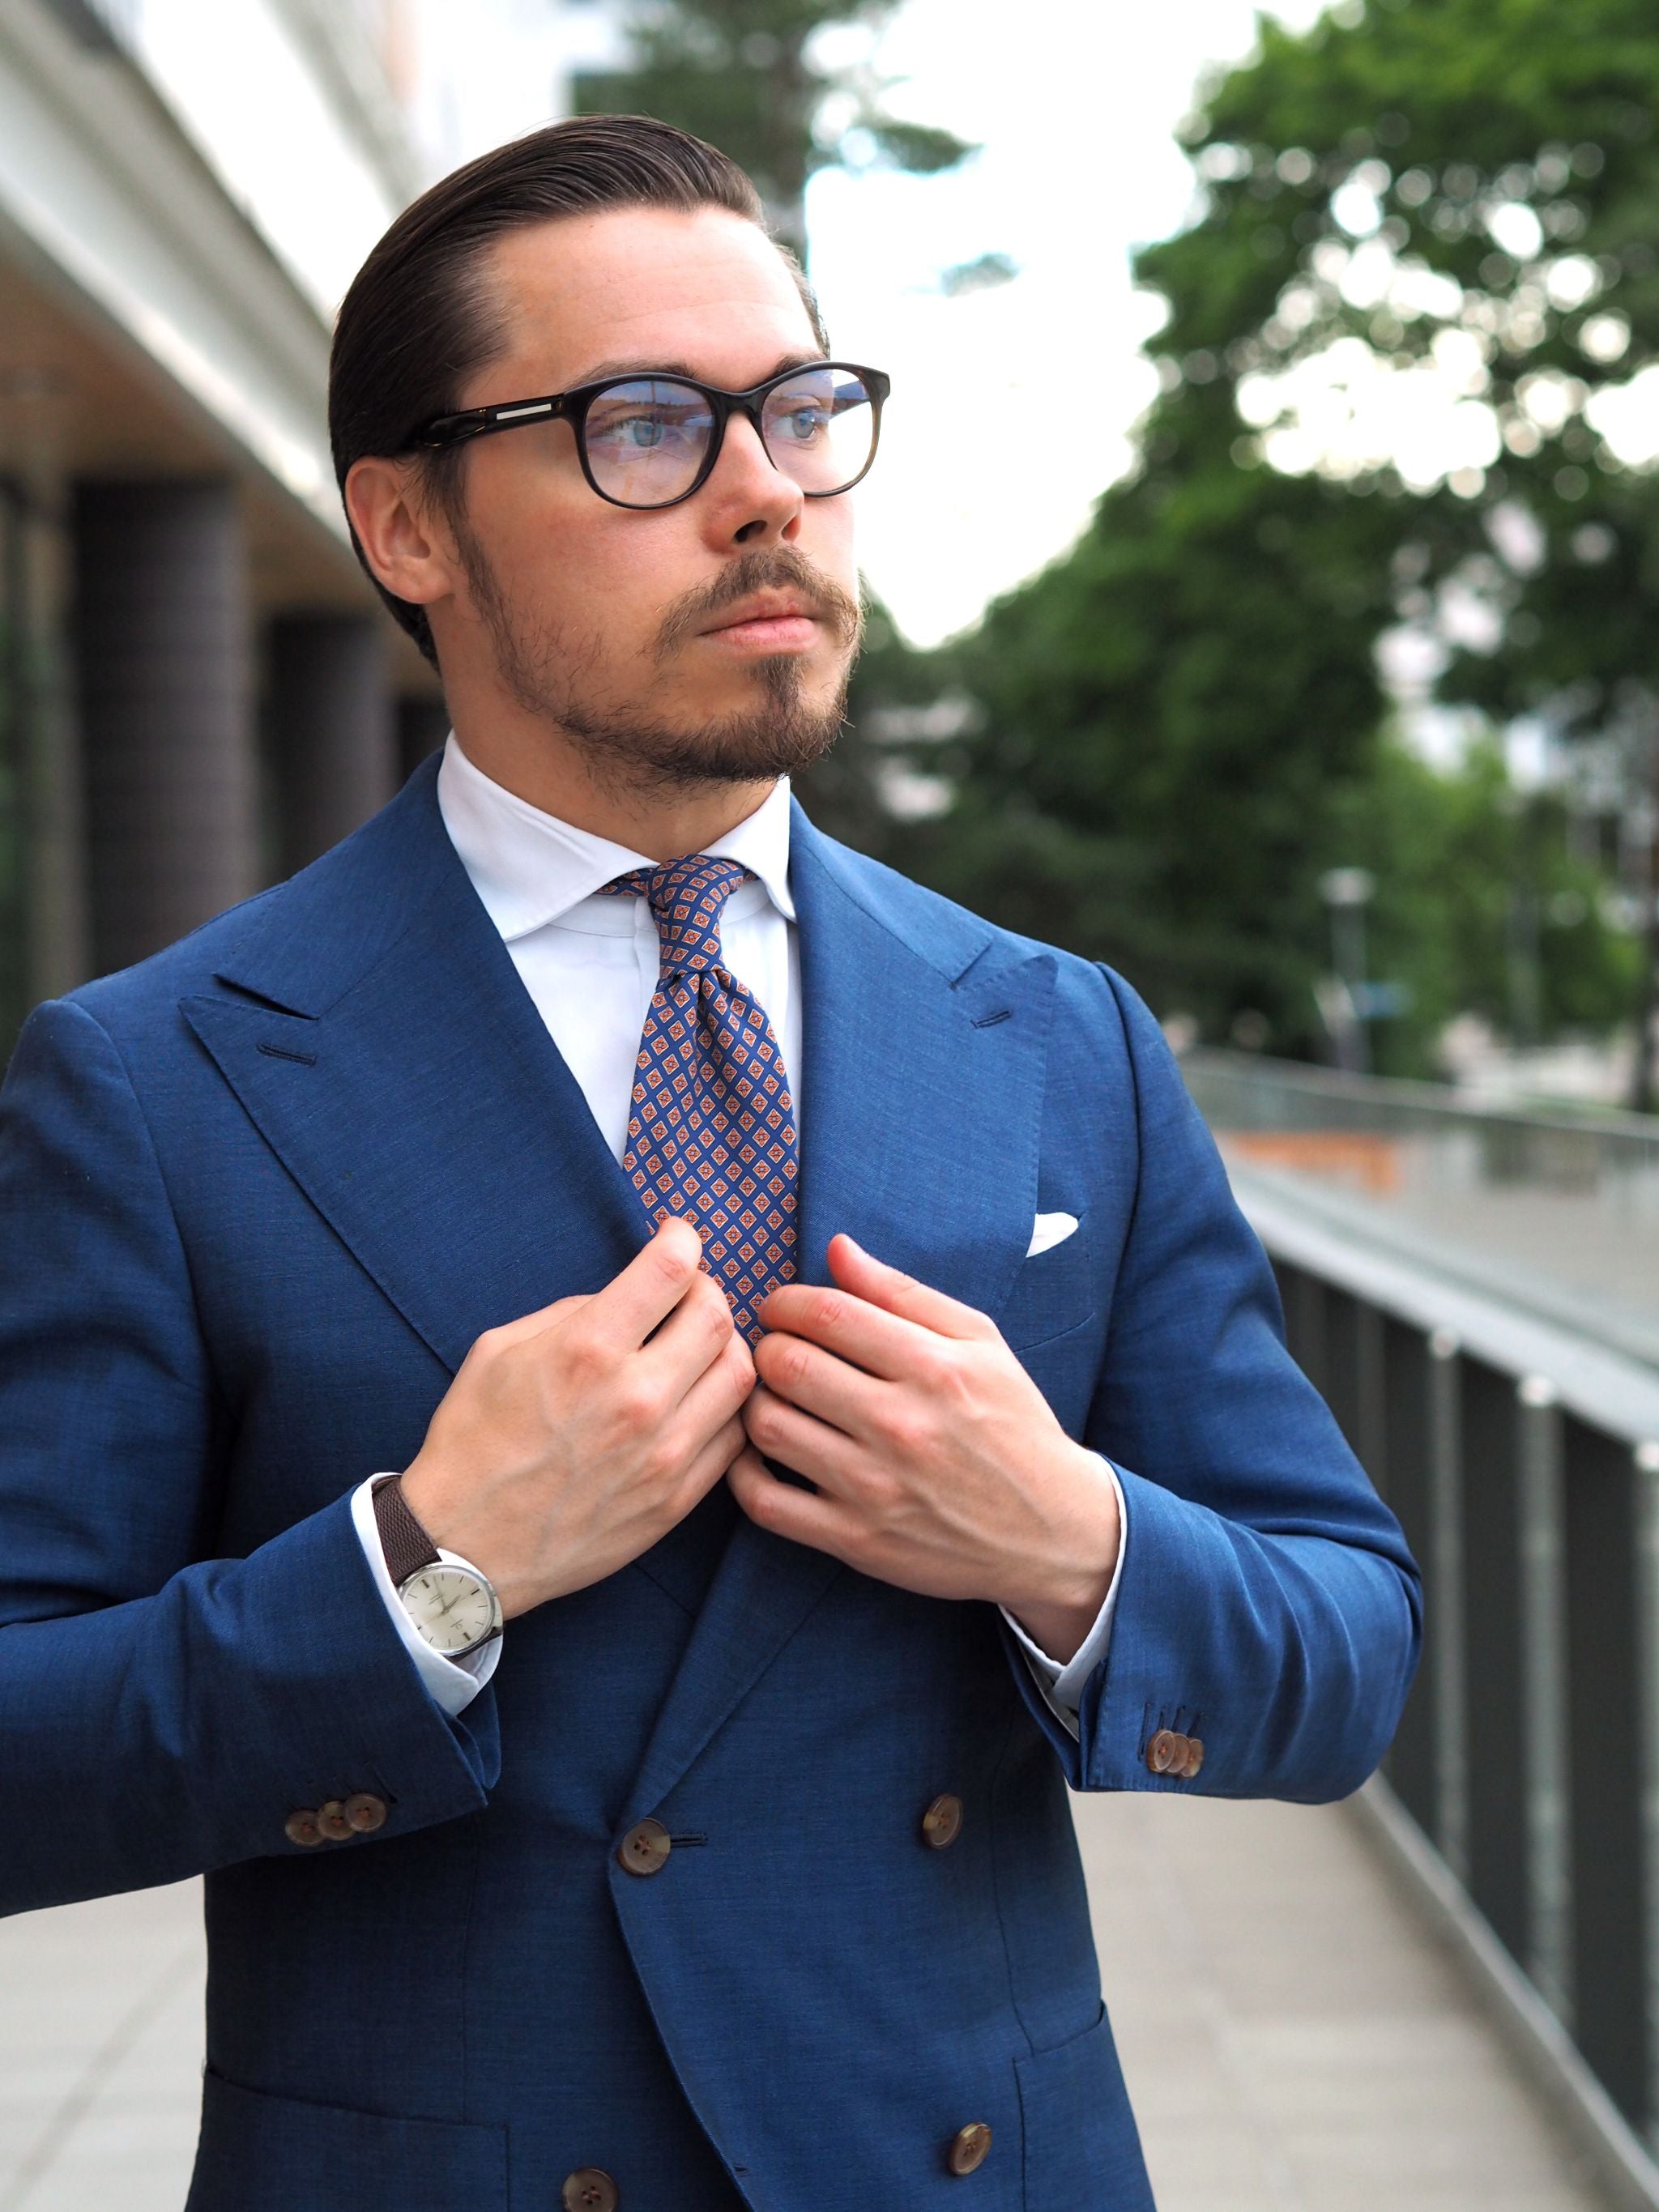 Royal blue suit - 3 different ways to wear - DressLikeA.com